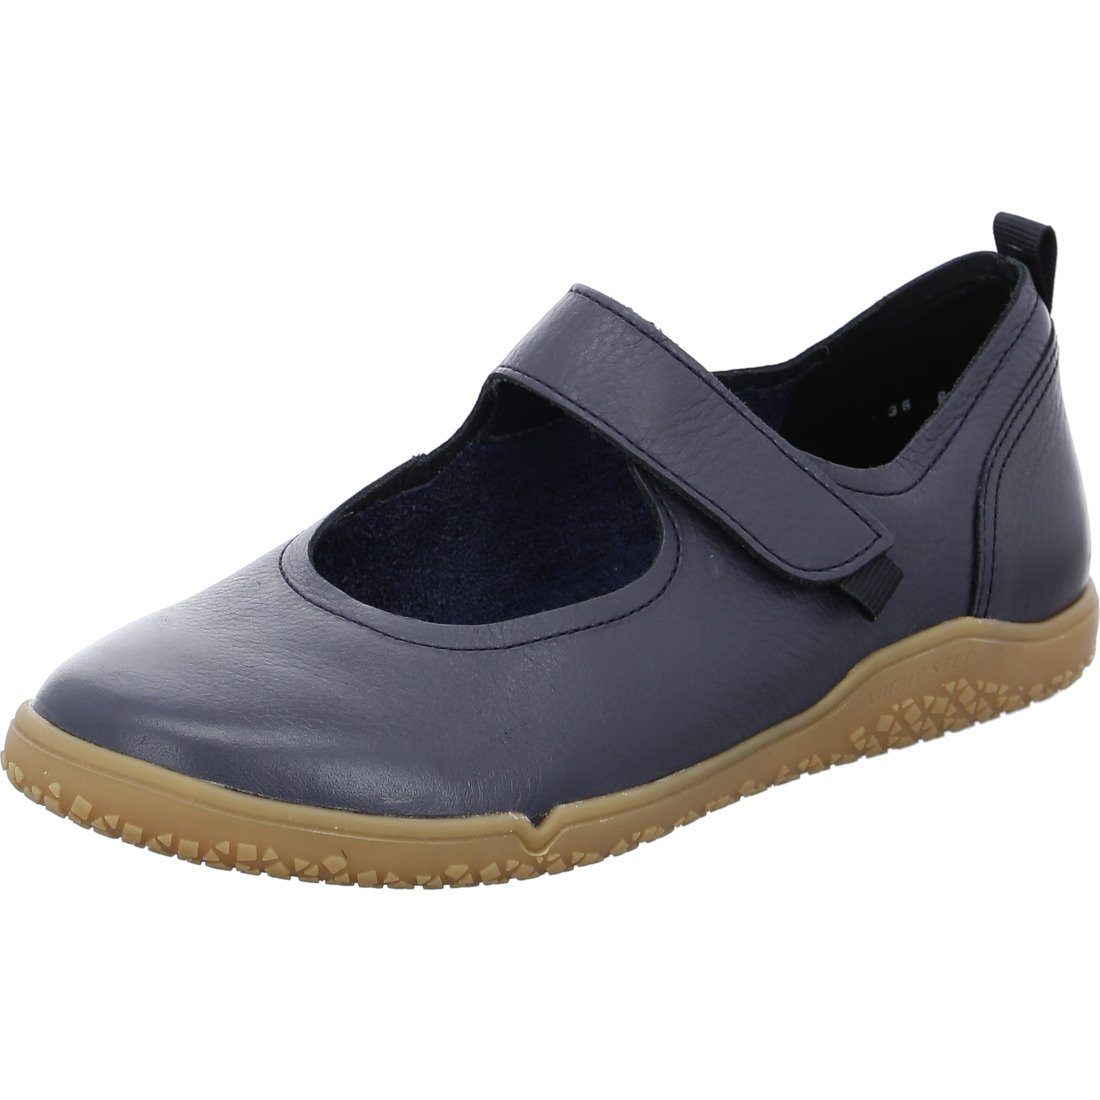 Sonderpreisinformationen Ara Ara - 045075 Schuhe, Damen Slipper Slipper Nature blau Glattleder